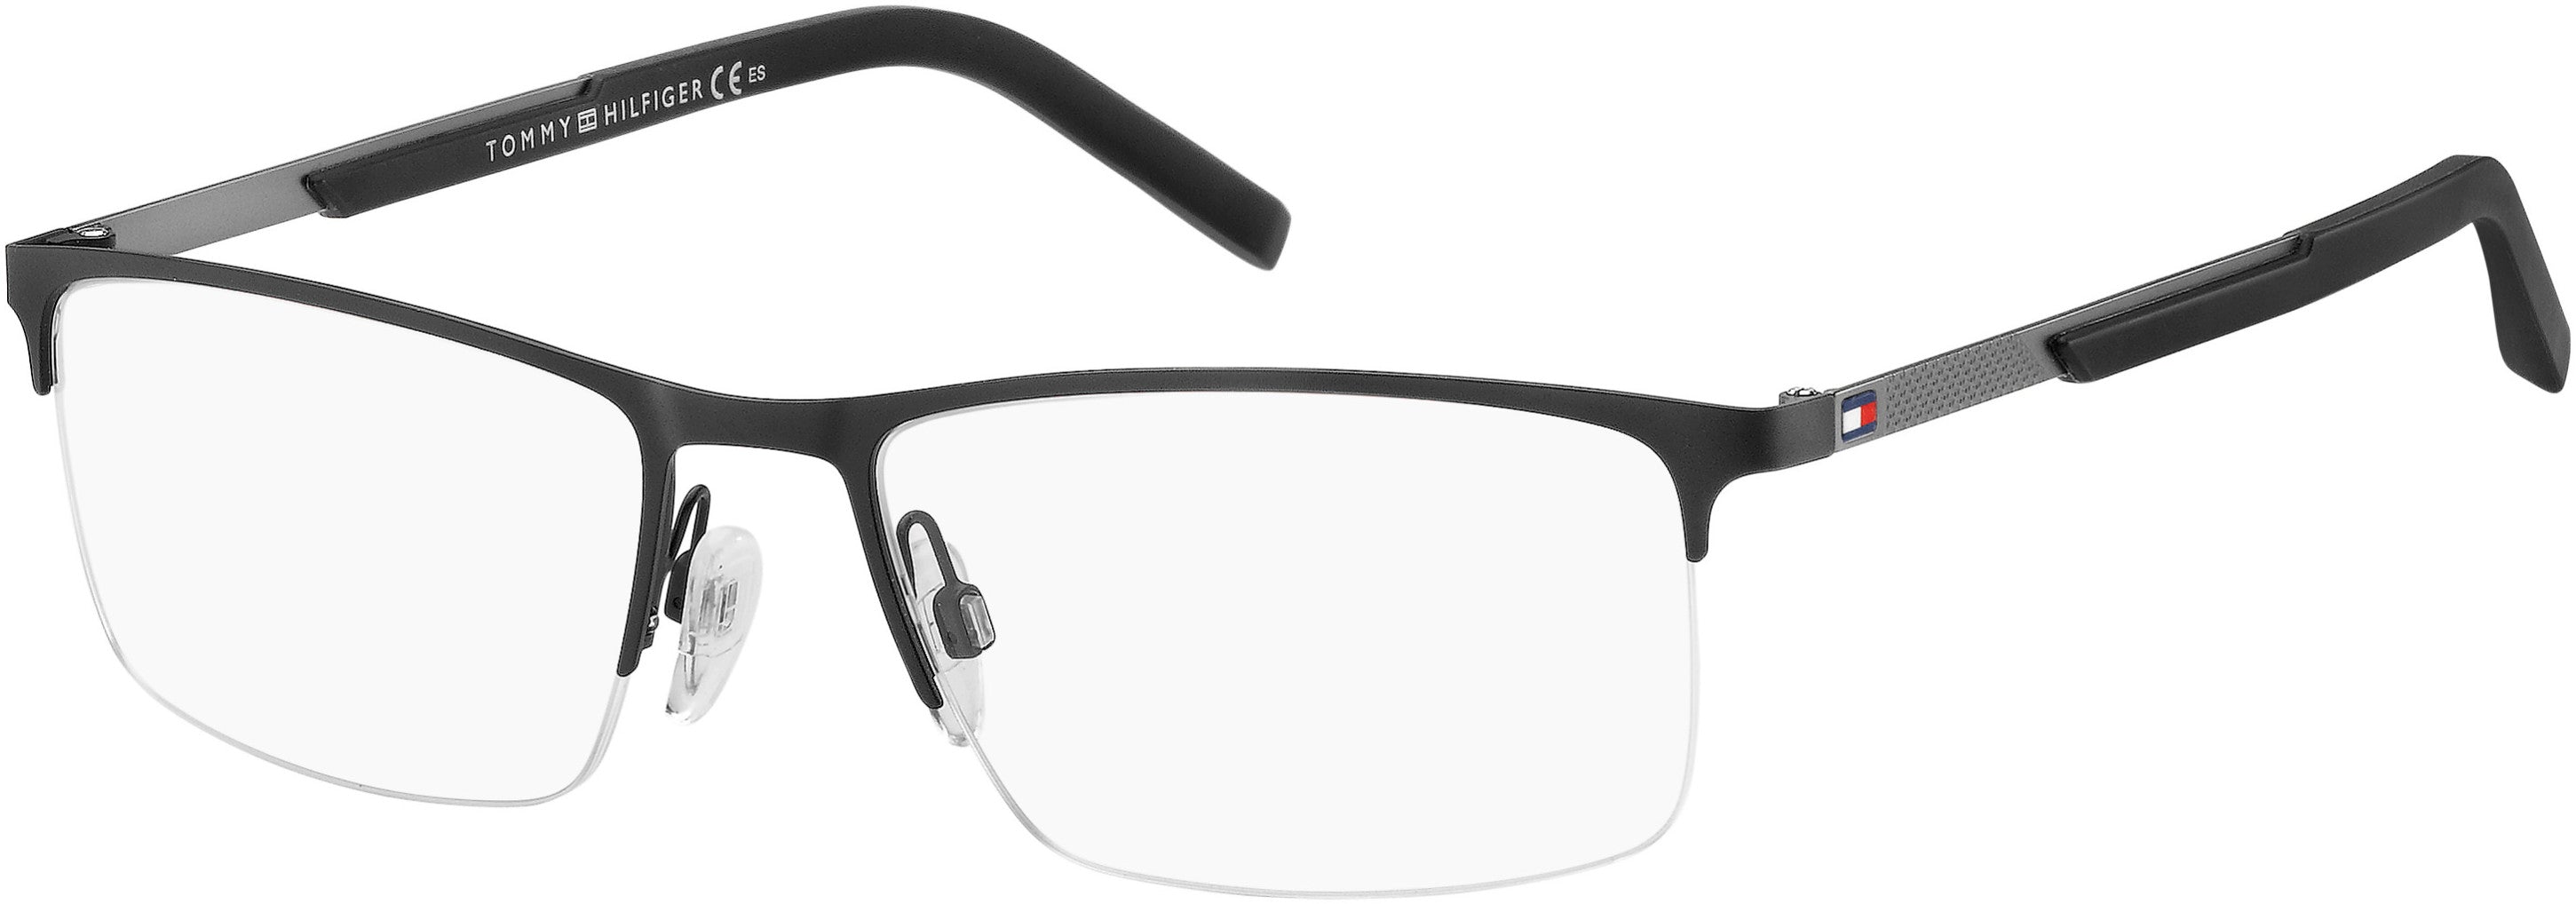 Tommy Hilfiger T. Hilfiger 1692 Rectangular Eyeglasses 0BSC-0BSC  Black Silver (00 Demo Lens)